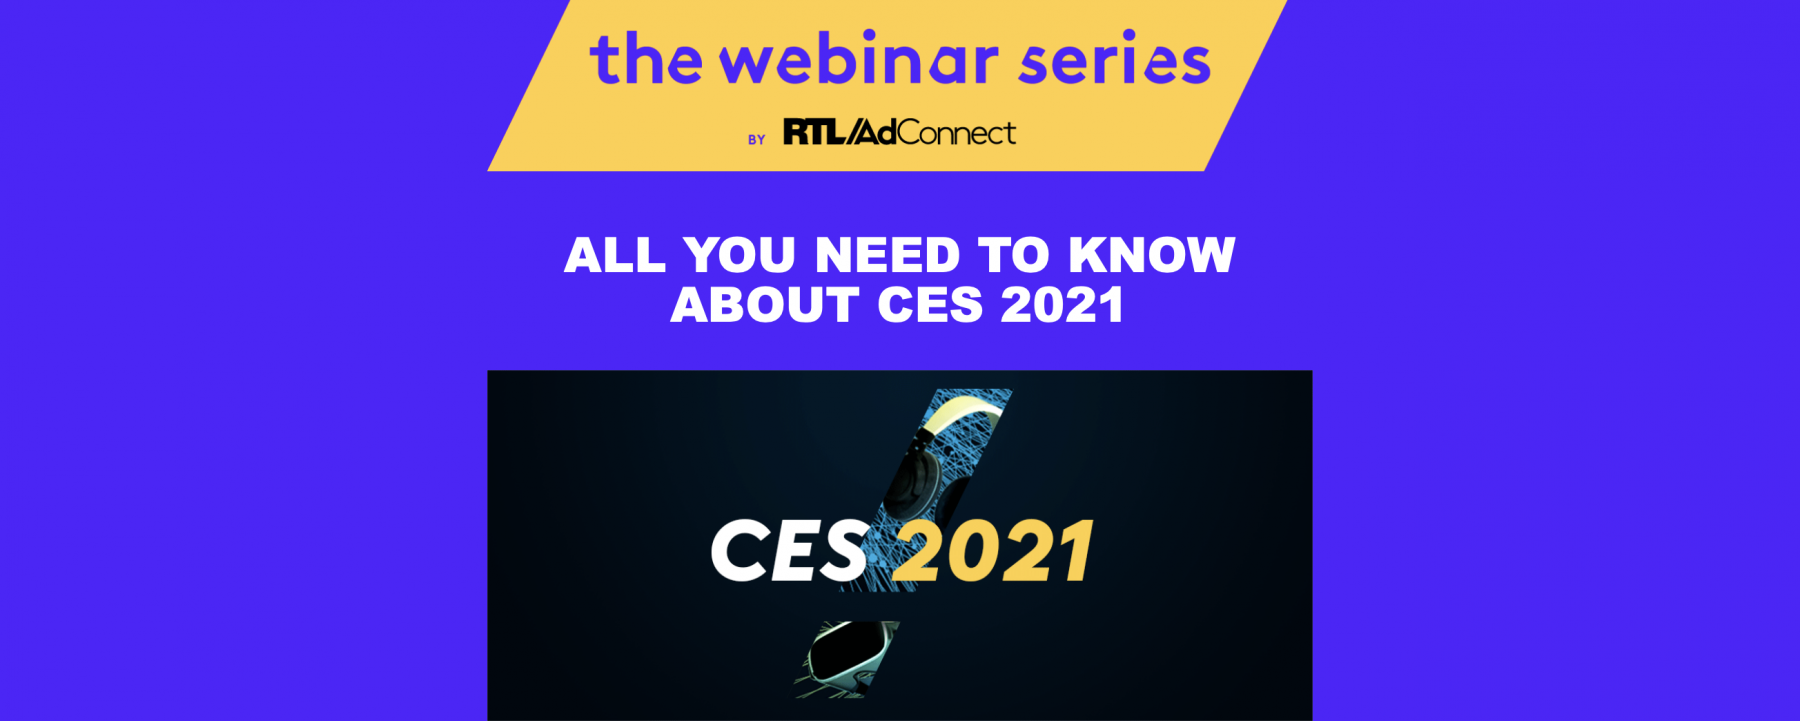 All you need to know about CES 2021, un événement organisé par RTL AdConnect le 3 février